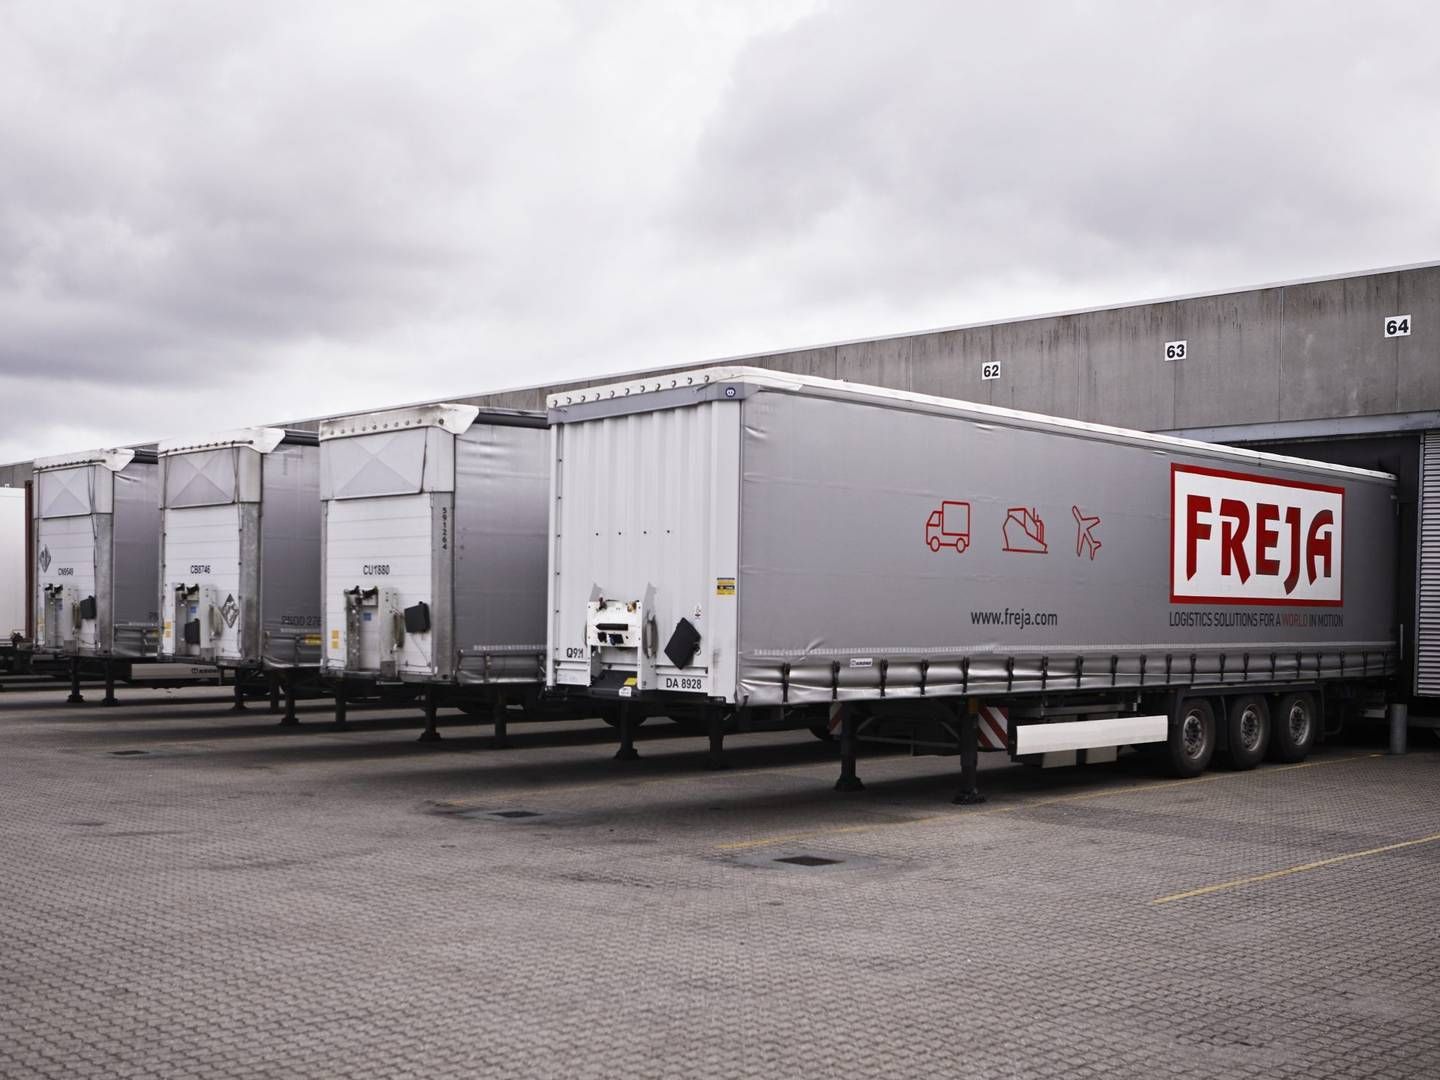 De danske transportkunder kan fremover købe en kurerløsning hos Freja. | Foto: Freja Transport og Logistics/pr